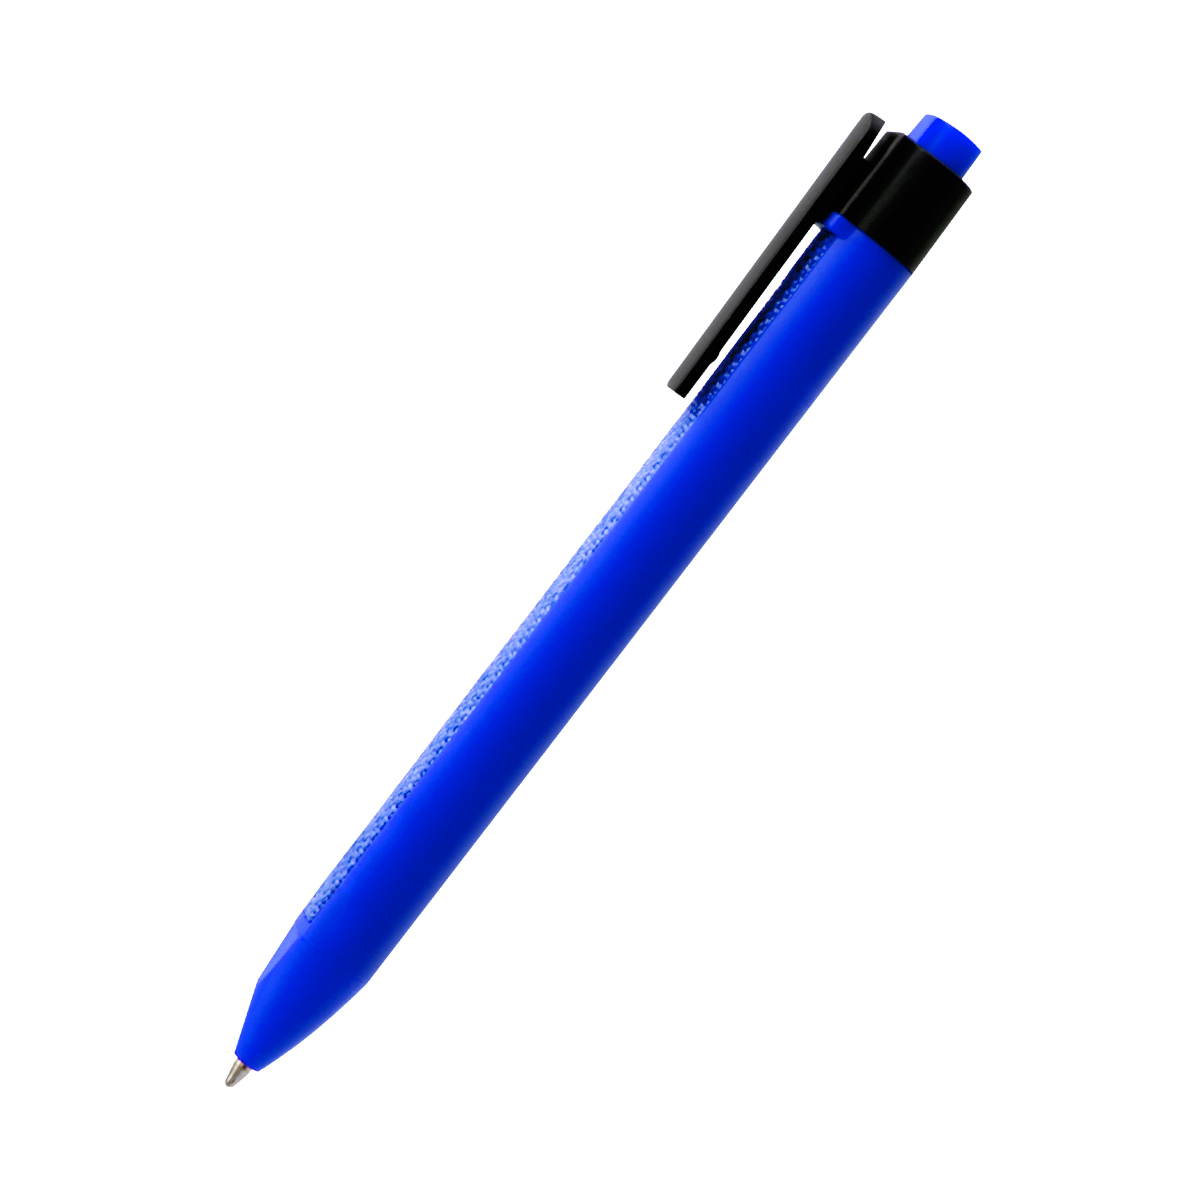 Ручка пластиковая с текстильной вставкой Kan, синяя (Фото)